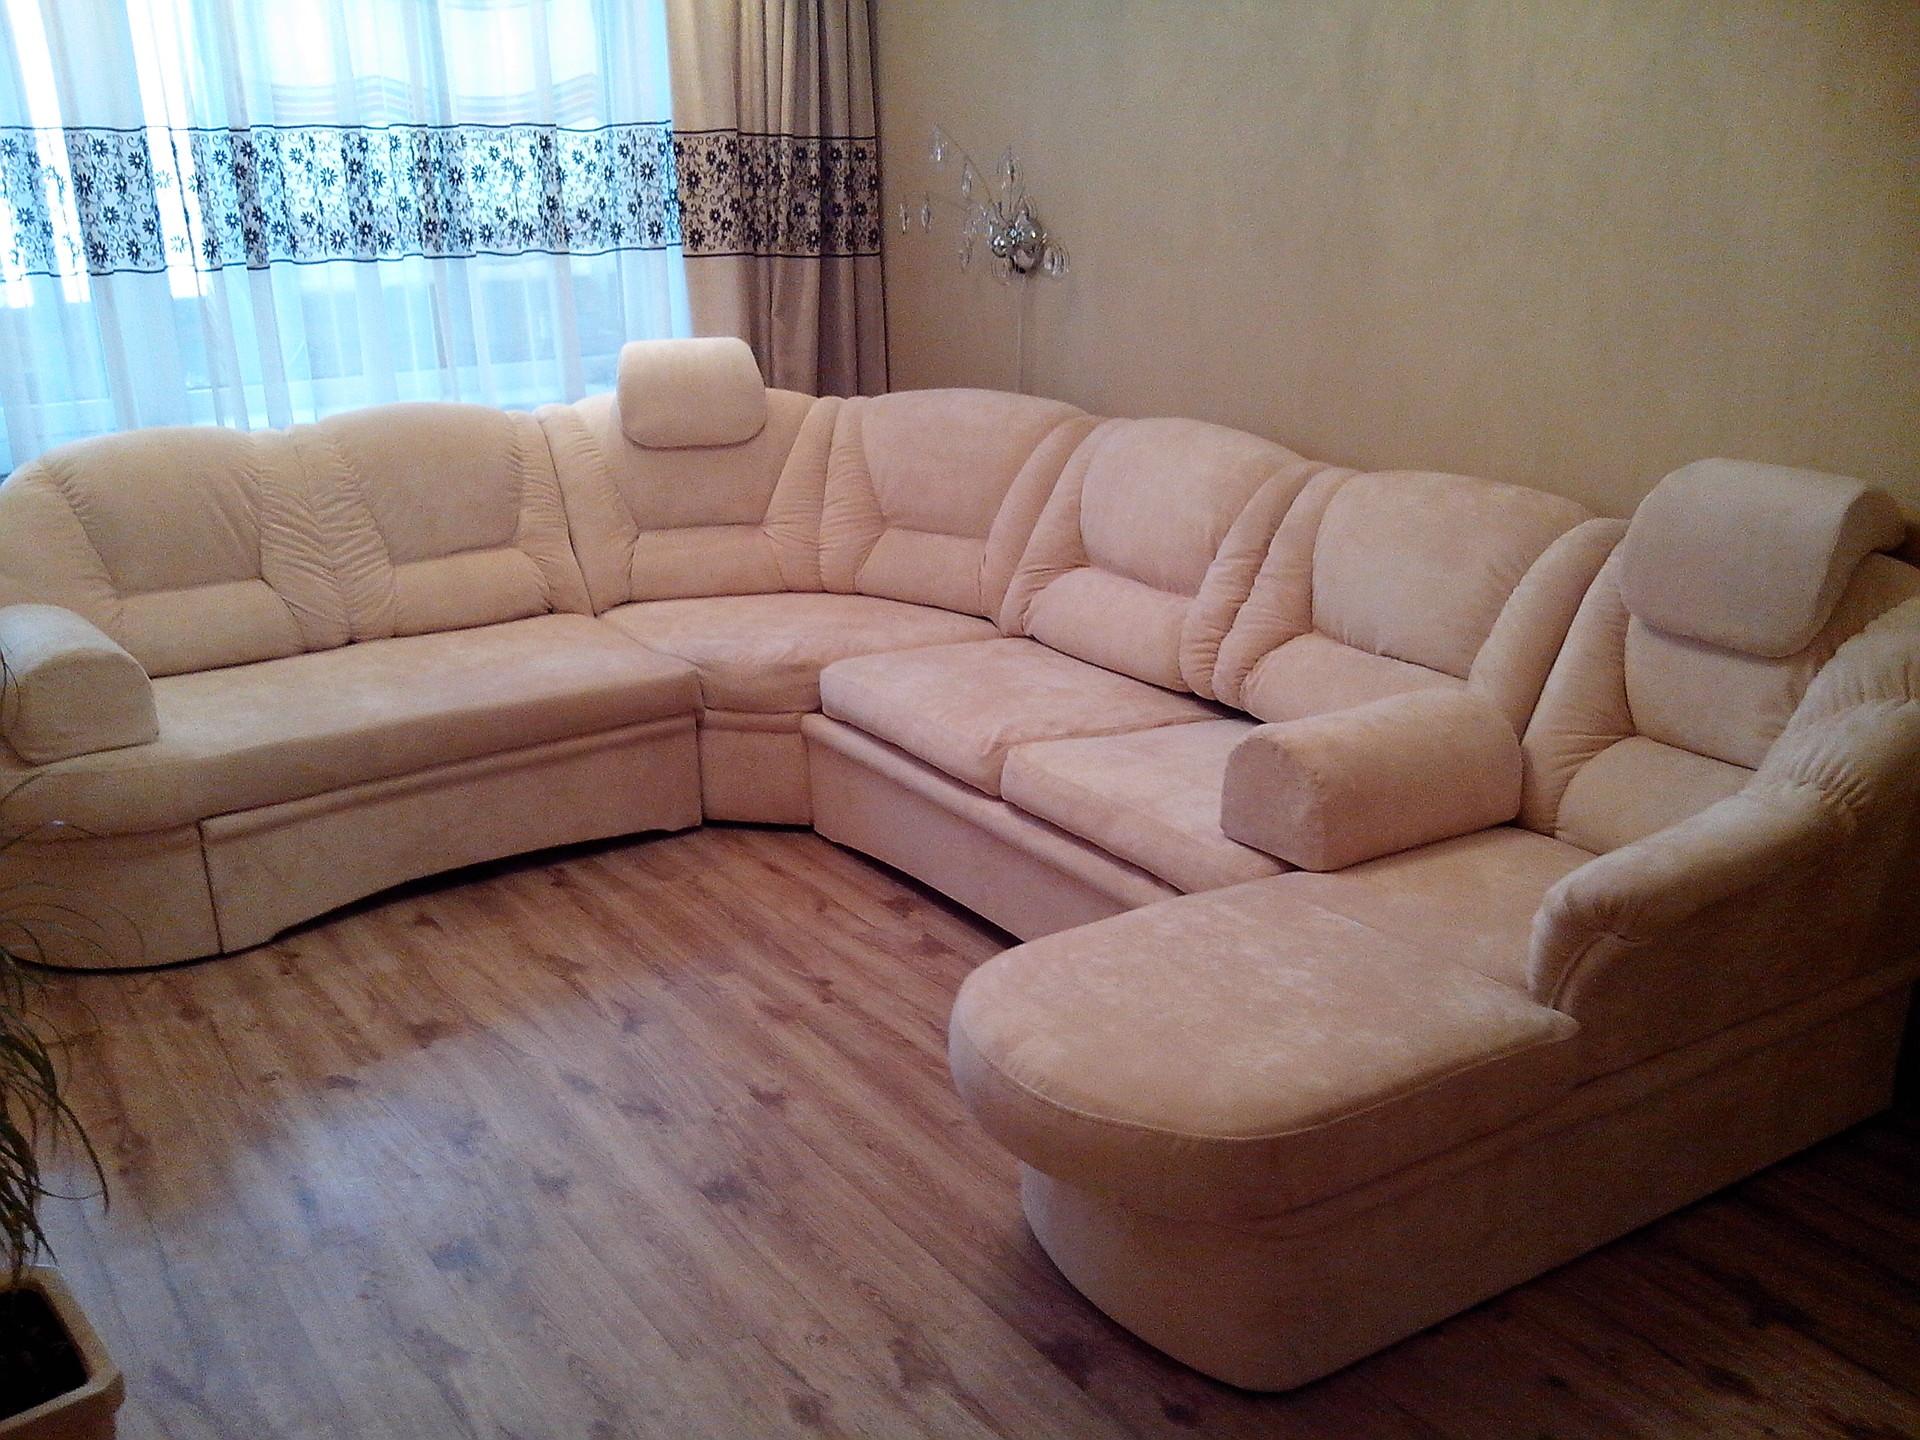 Реставрация в барнауле. Реставрация мягкой мебели. Мягкая мебель в городе Барнауле. Магазин Алтай Барнаул мягкая мебель. Комплект мягкой мебели в Барнауле.